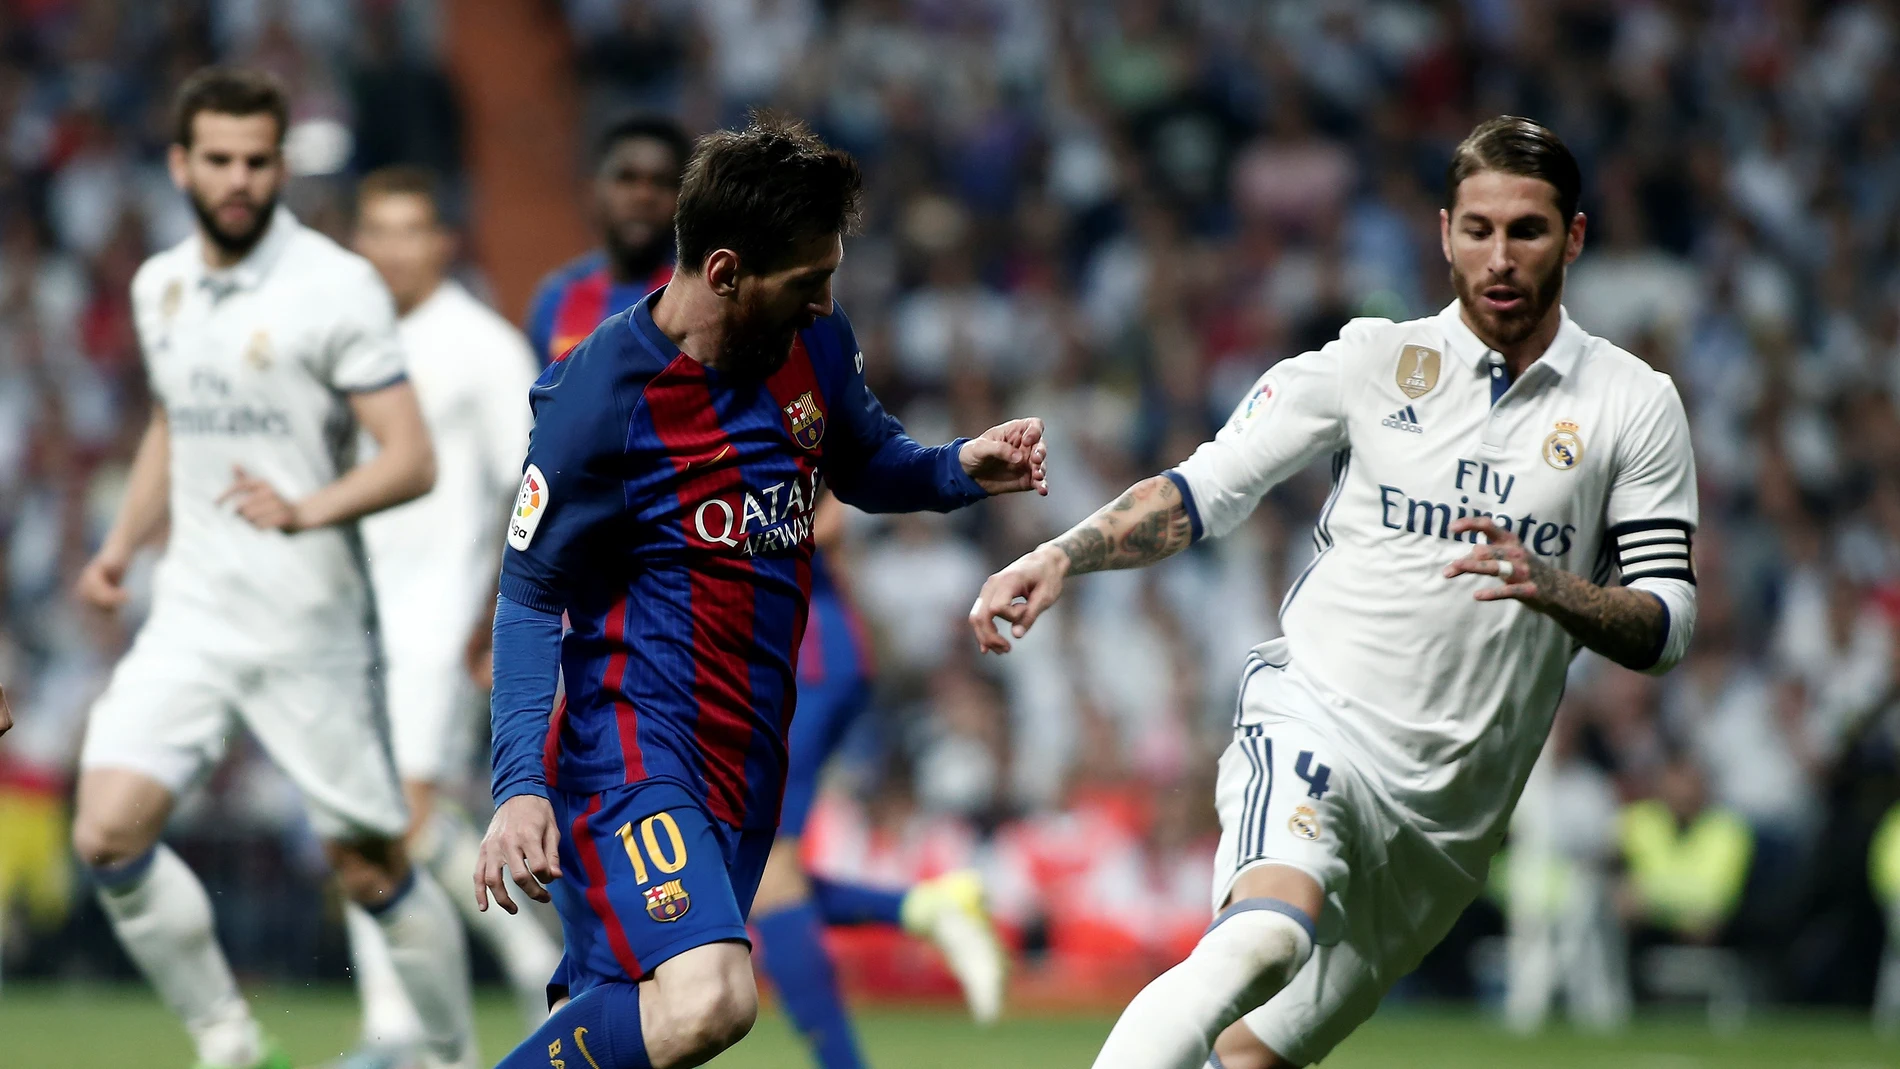 Leo Messi encara a Sergio Ramos en un Real Madrid - Barcelona